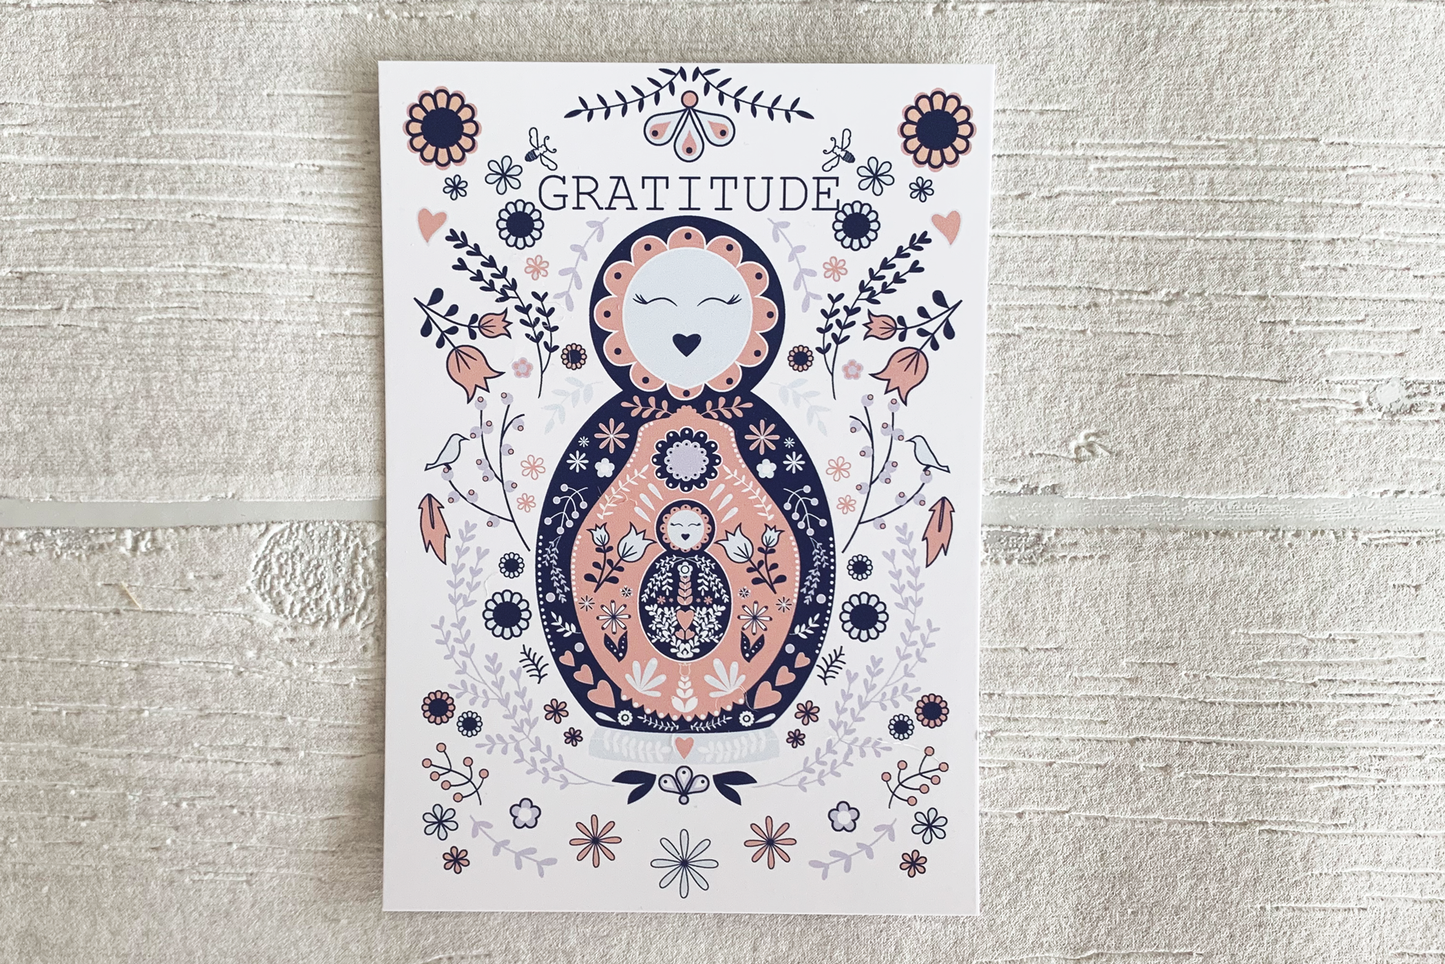 "Gratitude" Mantra Card